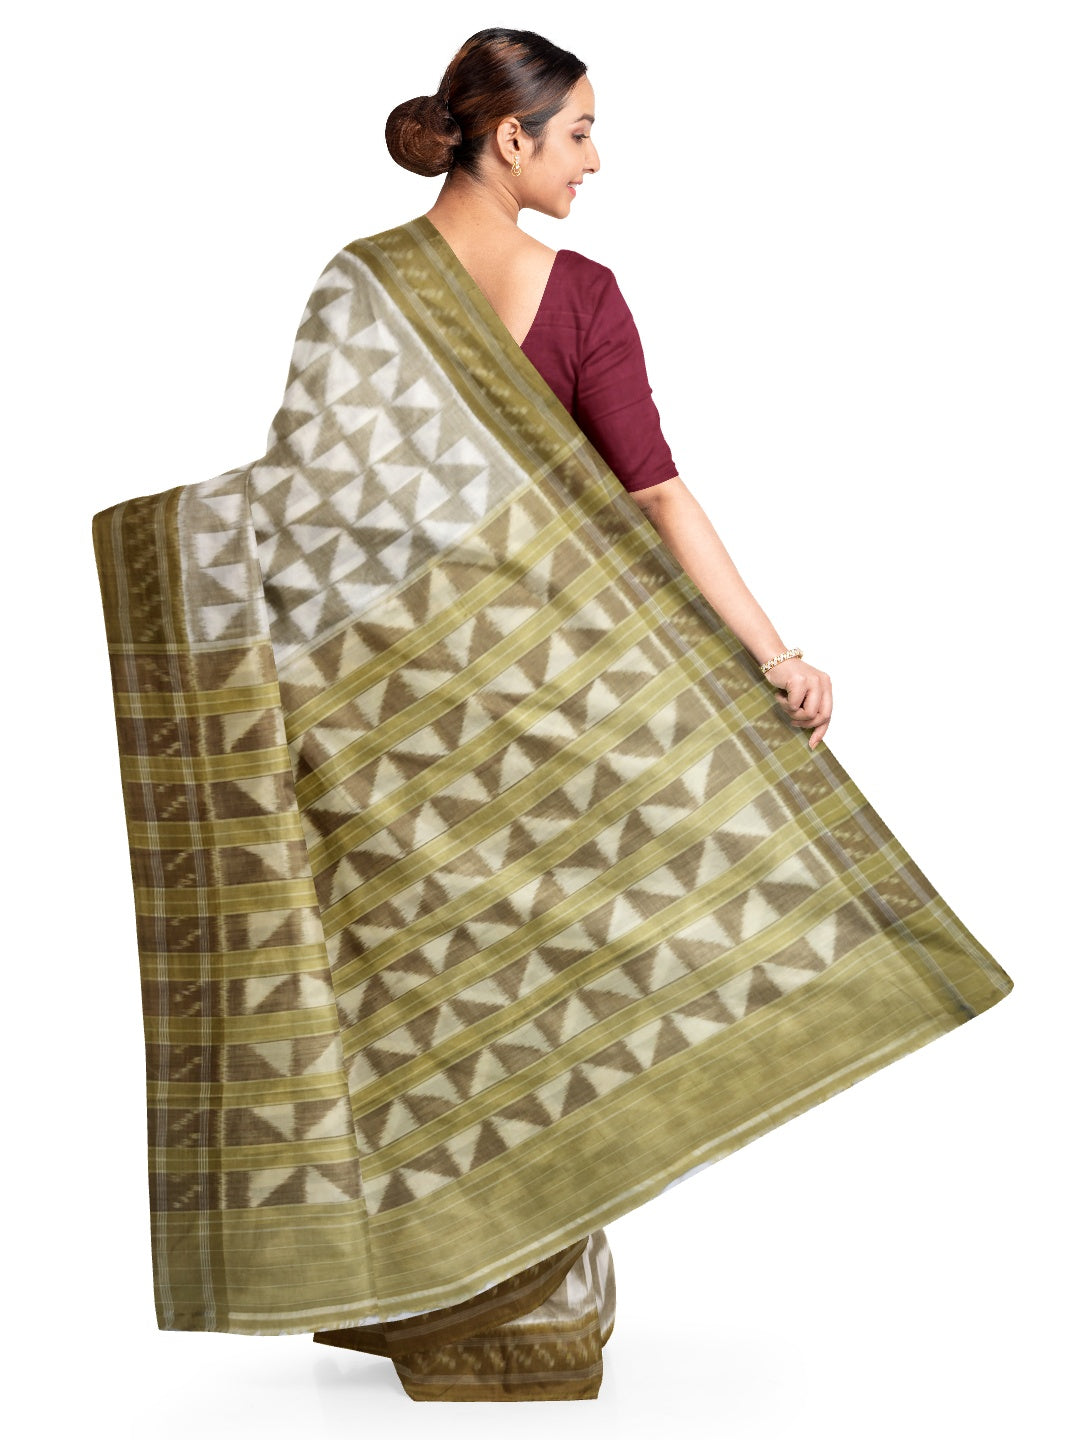 Off-white and GreenYellow Odisha ikat saree with geometric pattern woven motifs